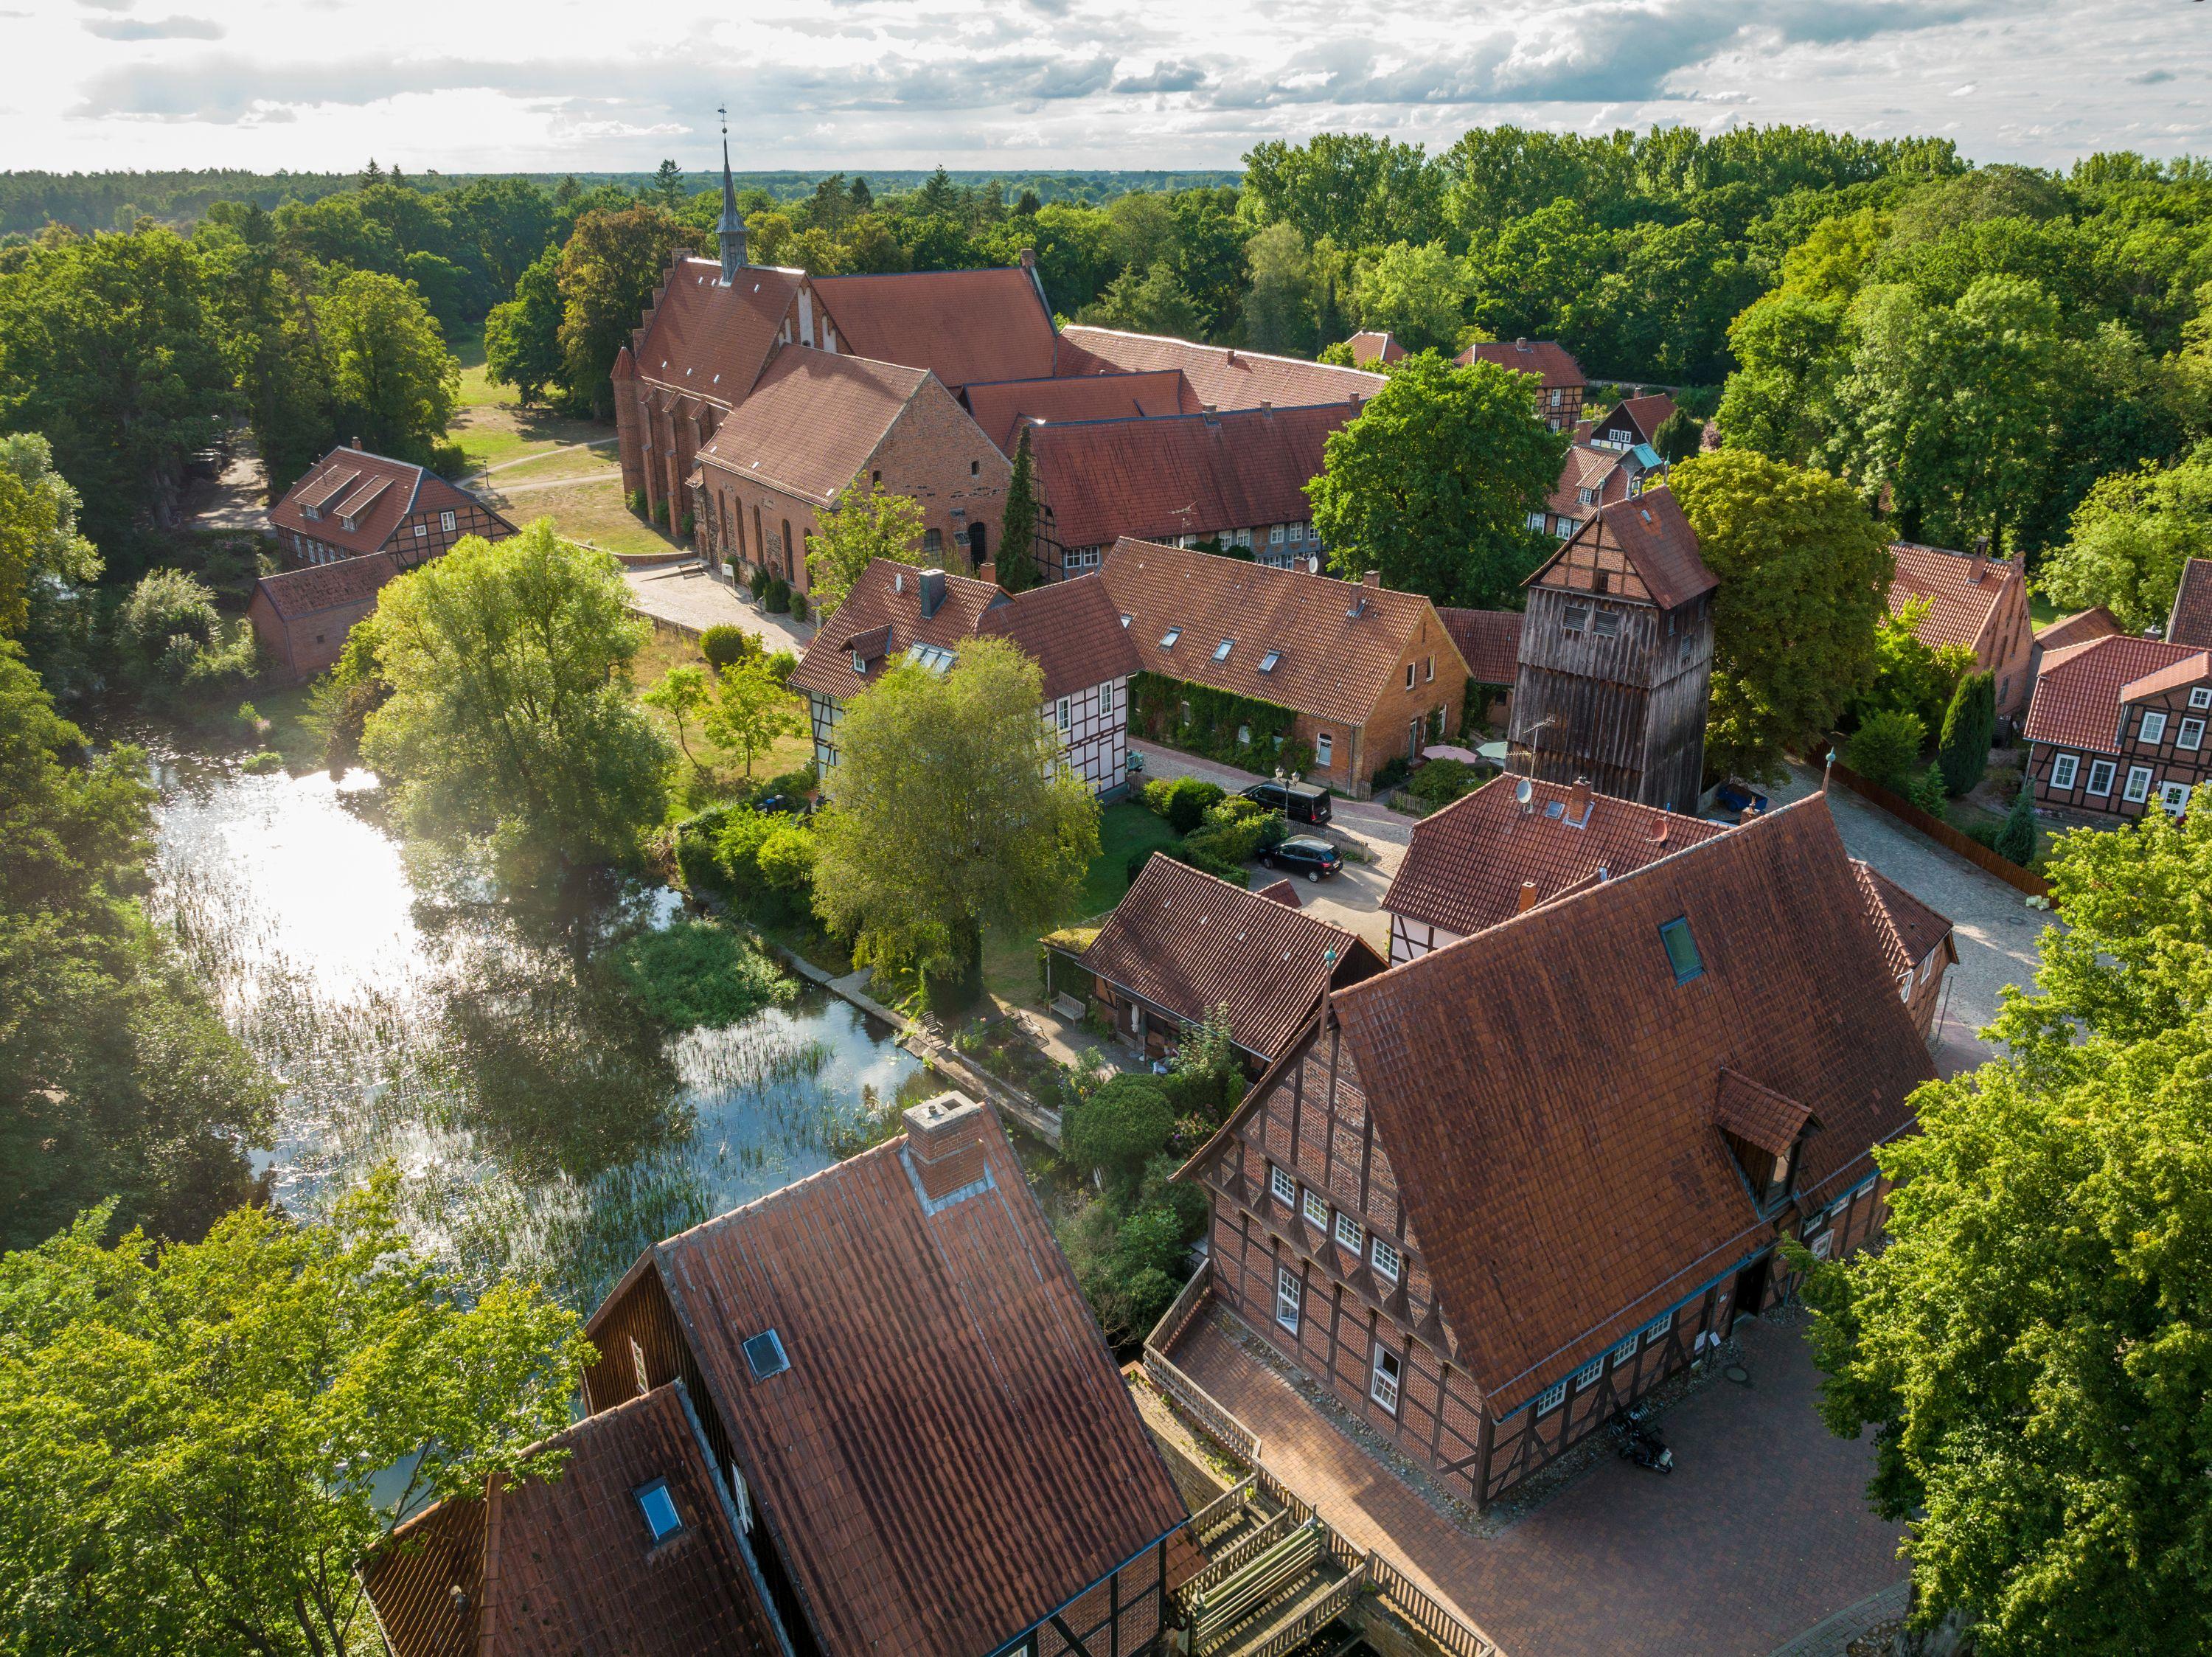 The monastic community Wienhausen